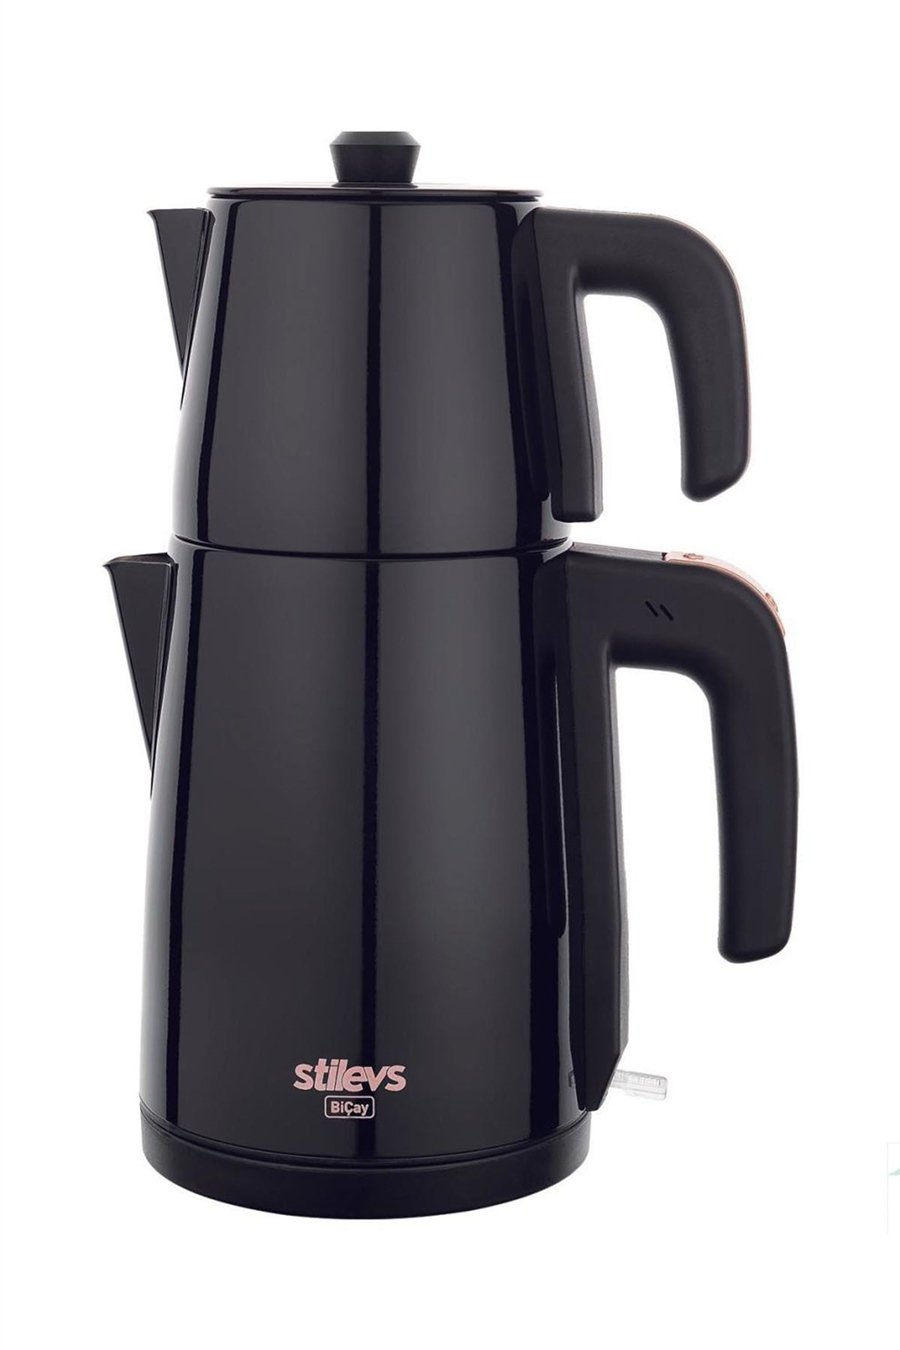 Stilevs Sıh30607 Biçay Çelik Çay Makinesi İnox - Siyah